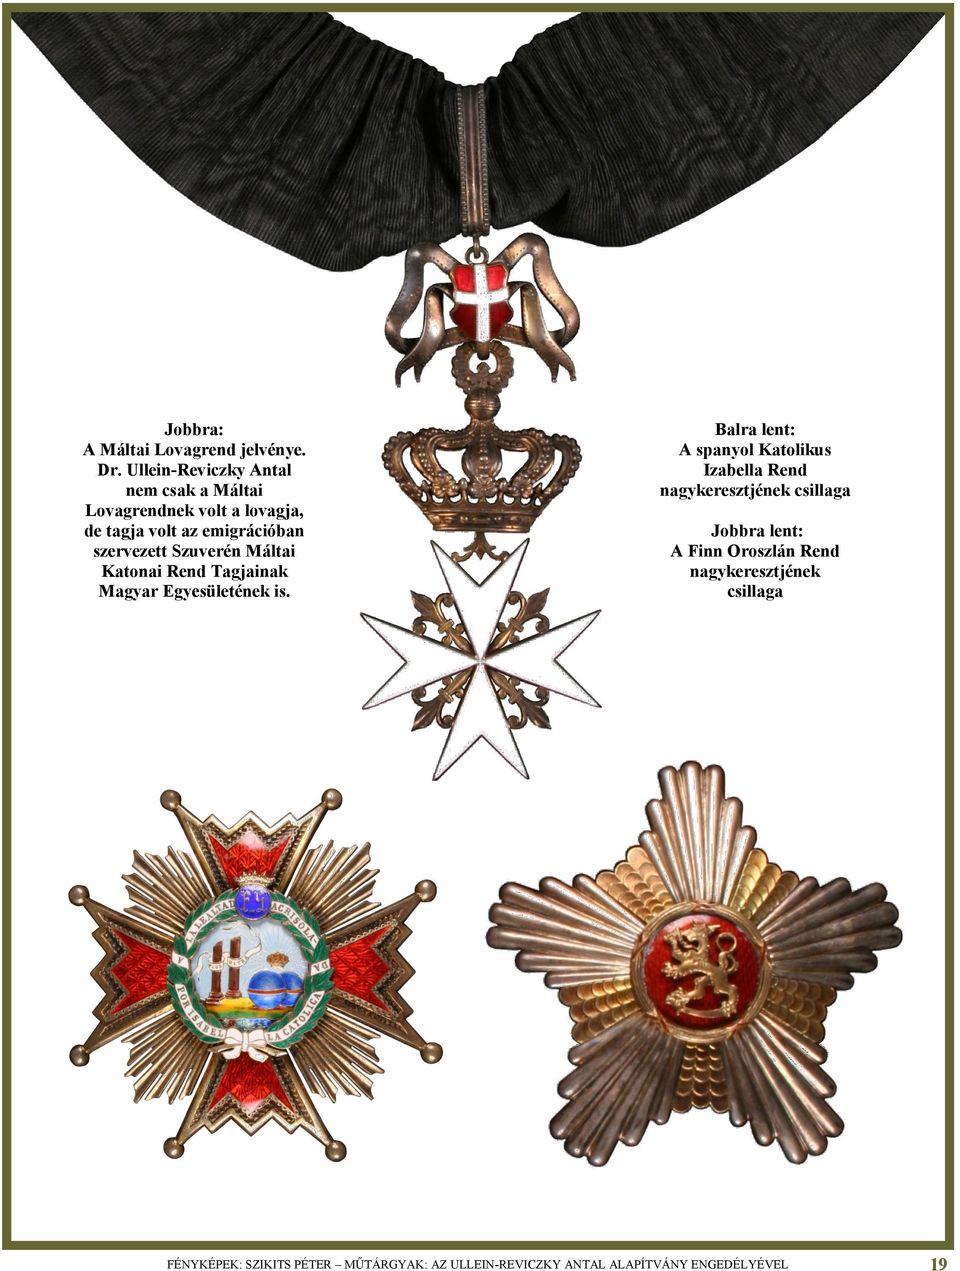 szervezett Szuverén Máltai Katonai Rend Tagjainak Magyar Egyesületének is.